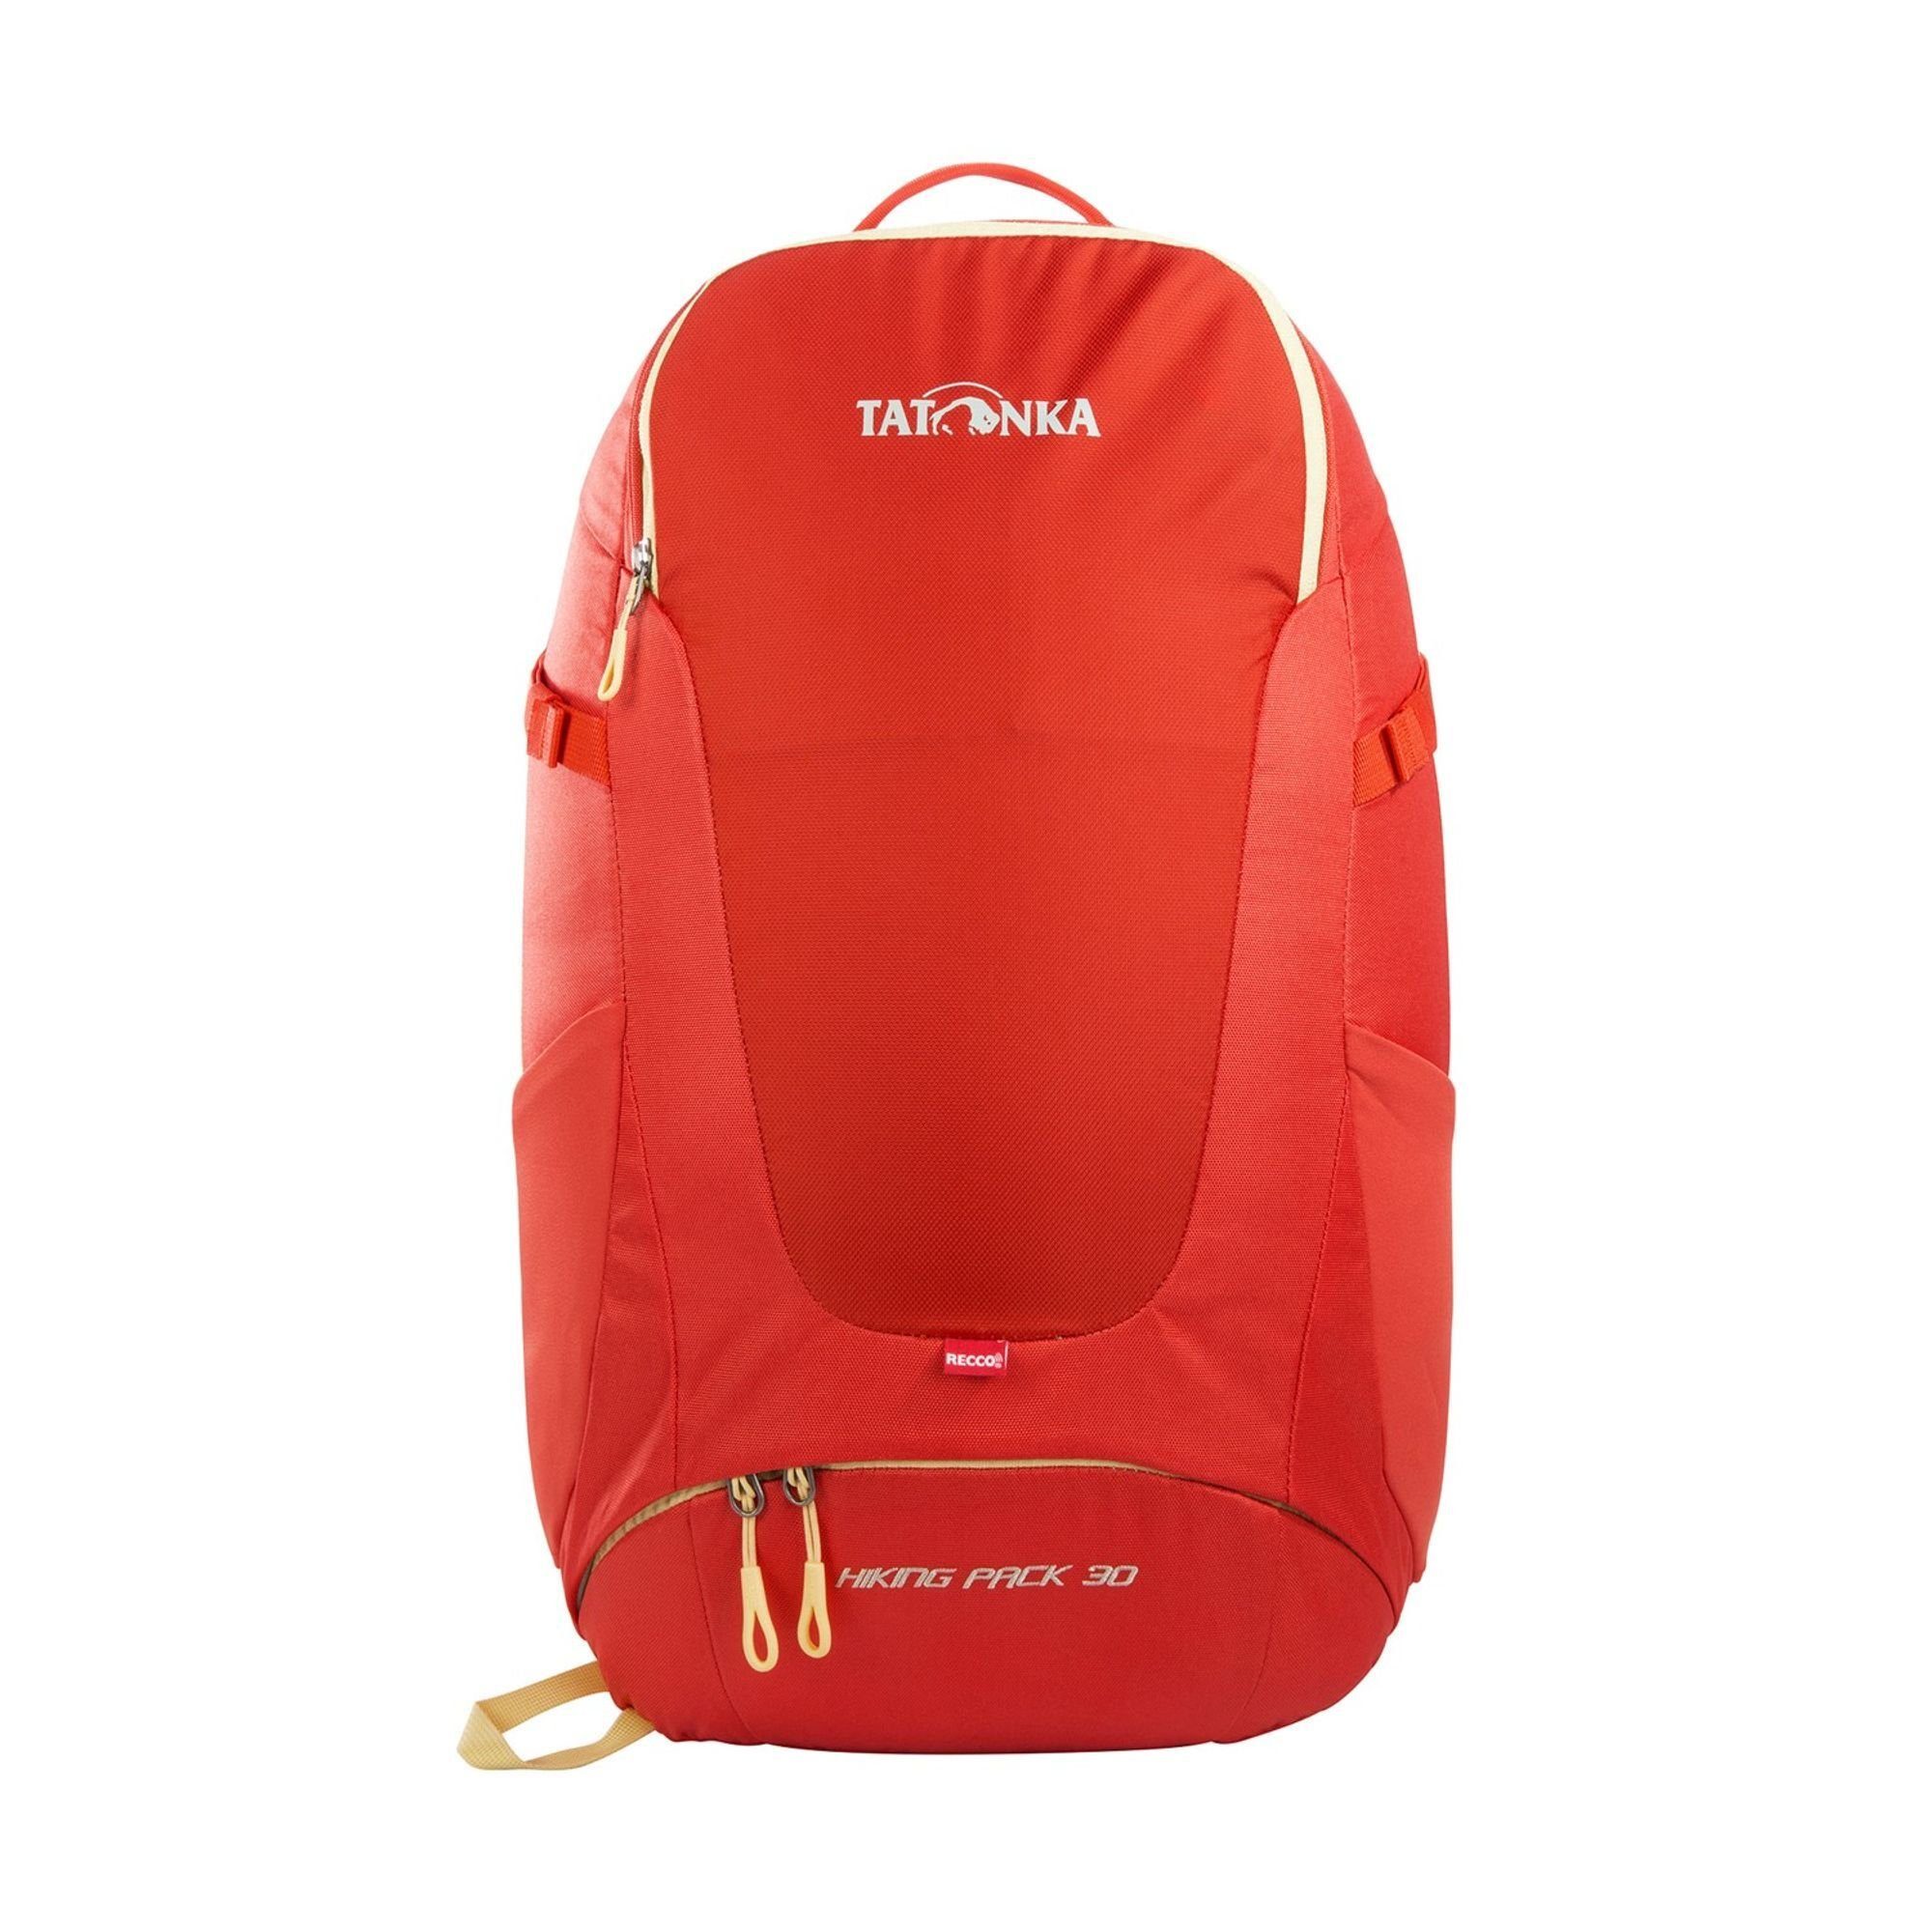 TATONKA® Wanderrucksack Hiking Pack, red orange Polyamid